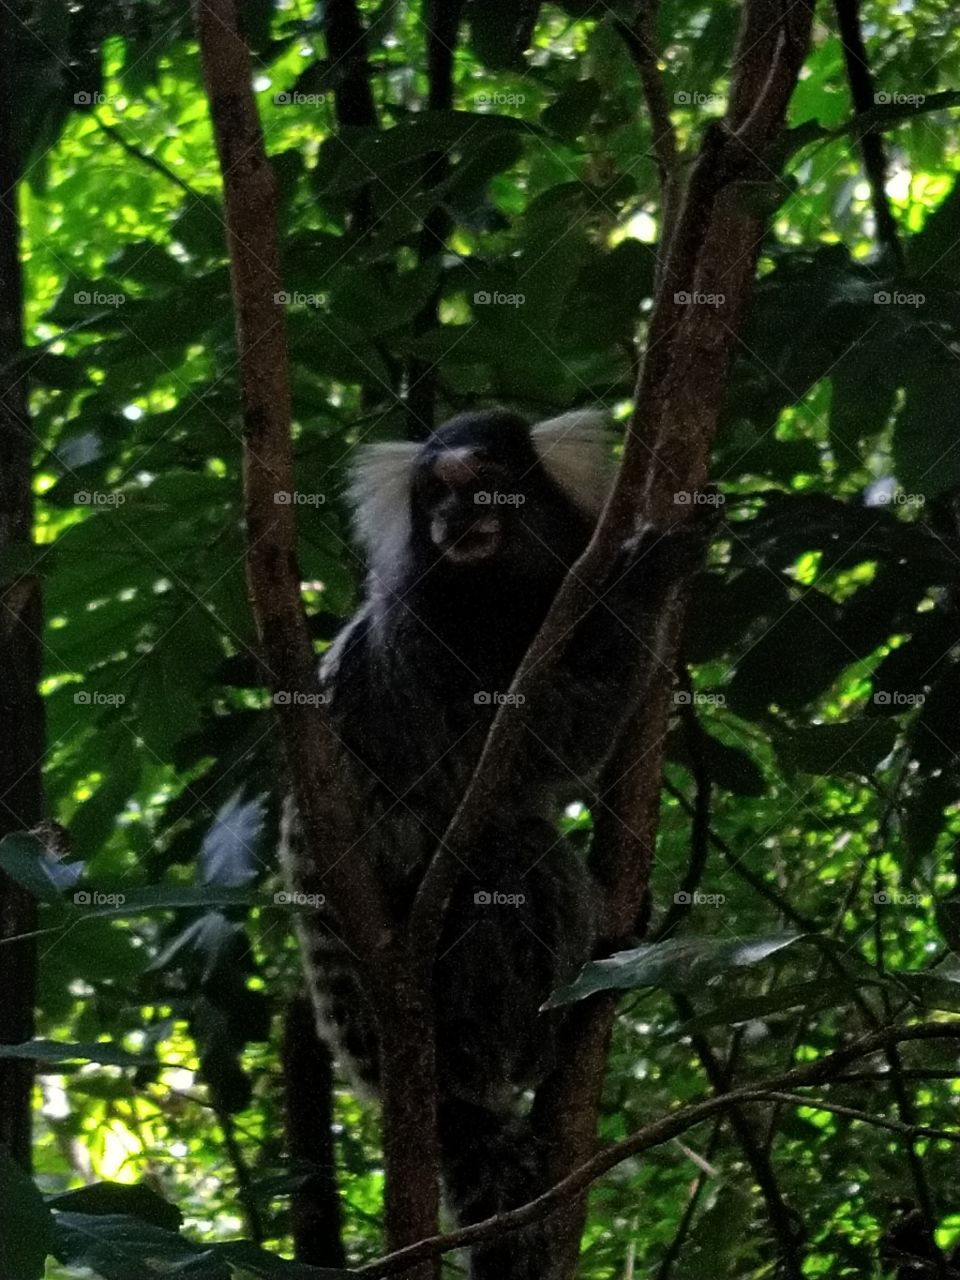 Monkey up in tree